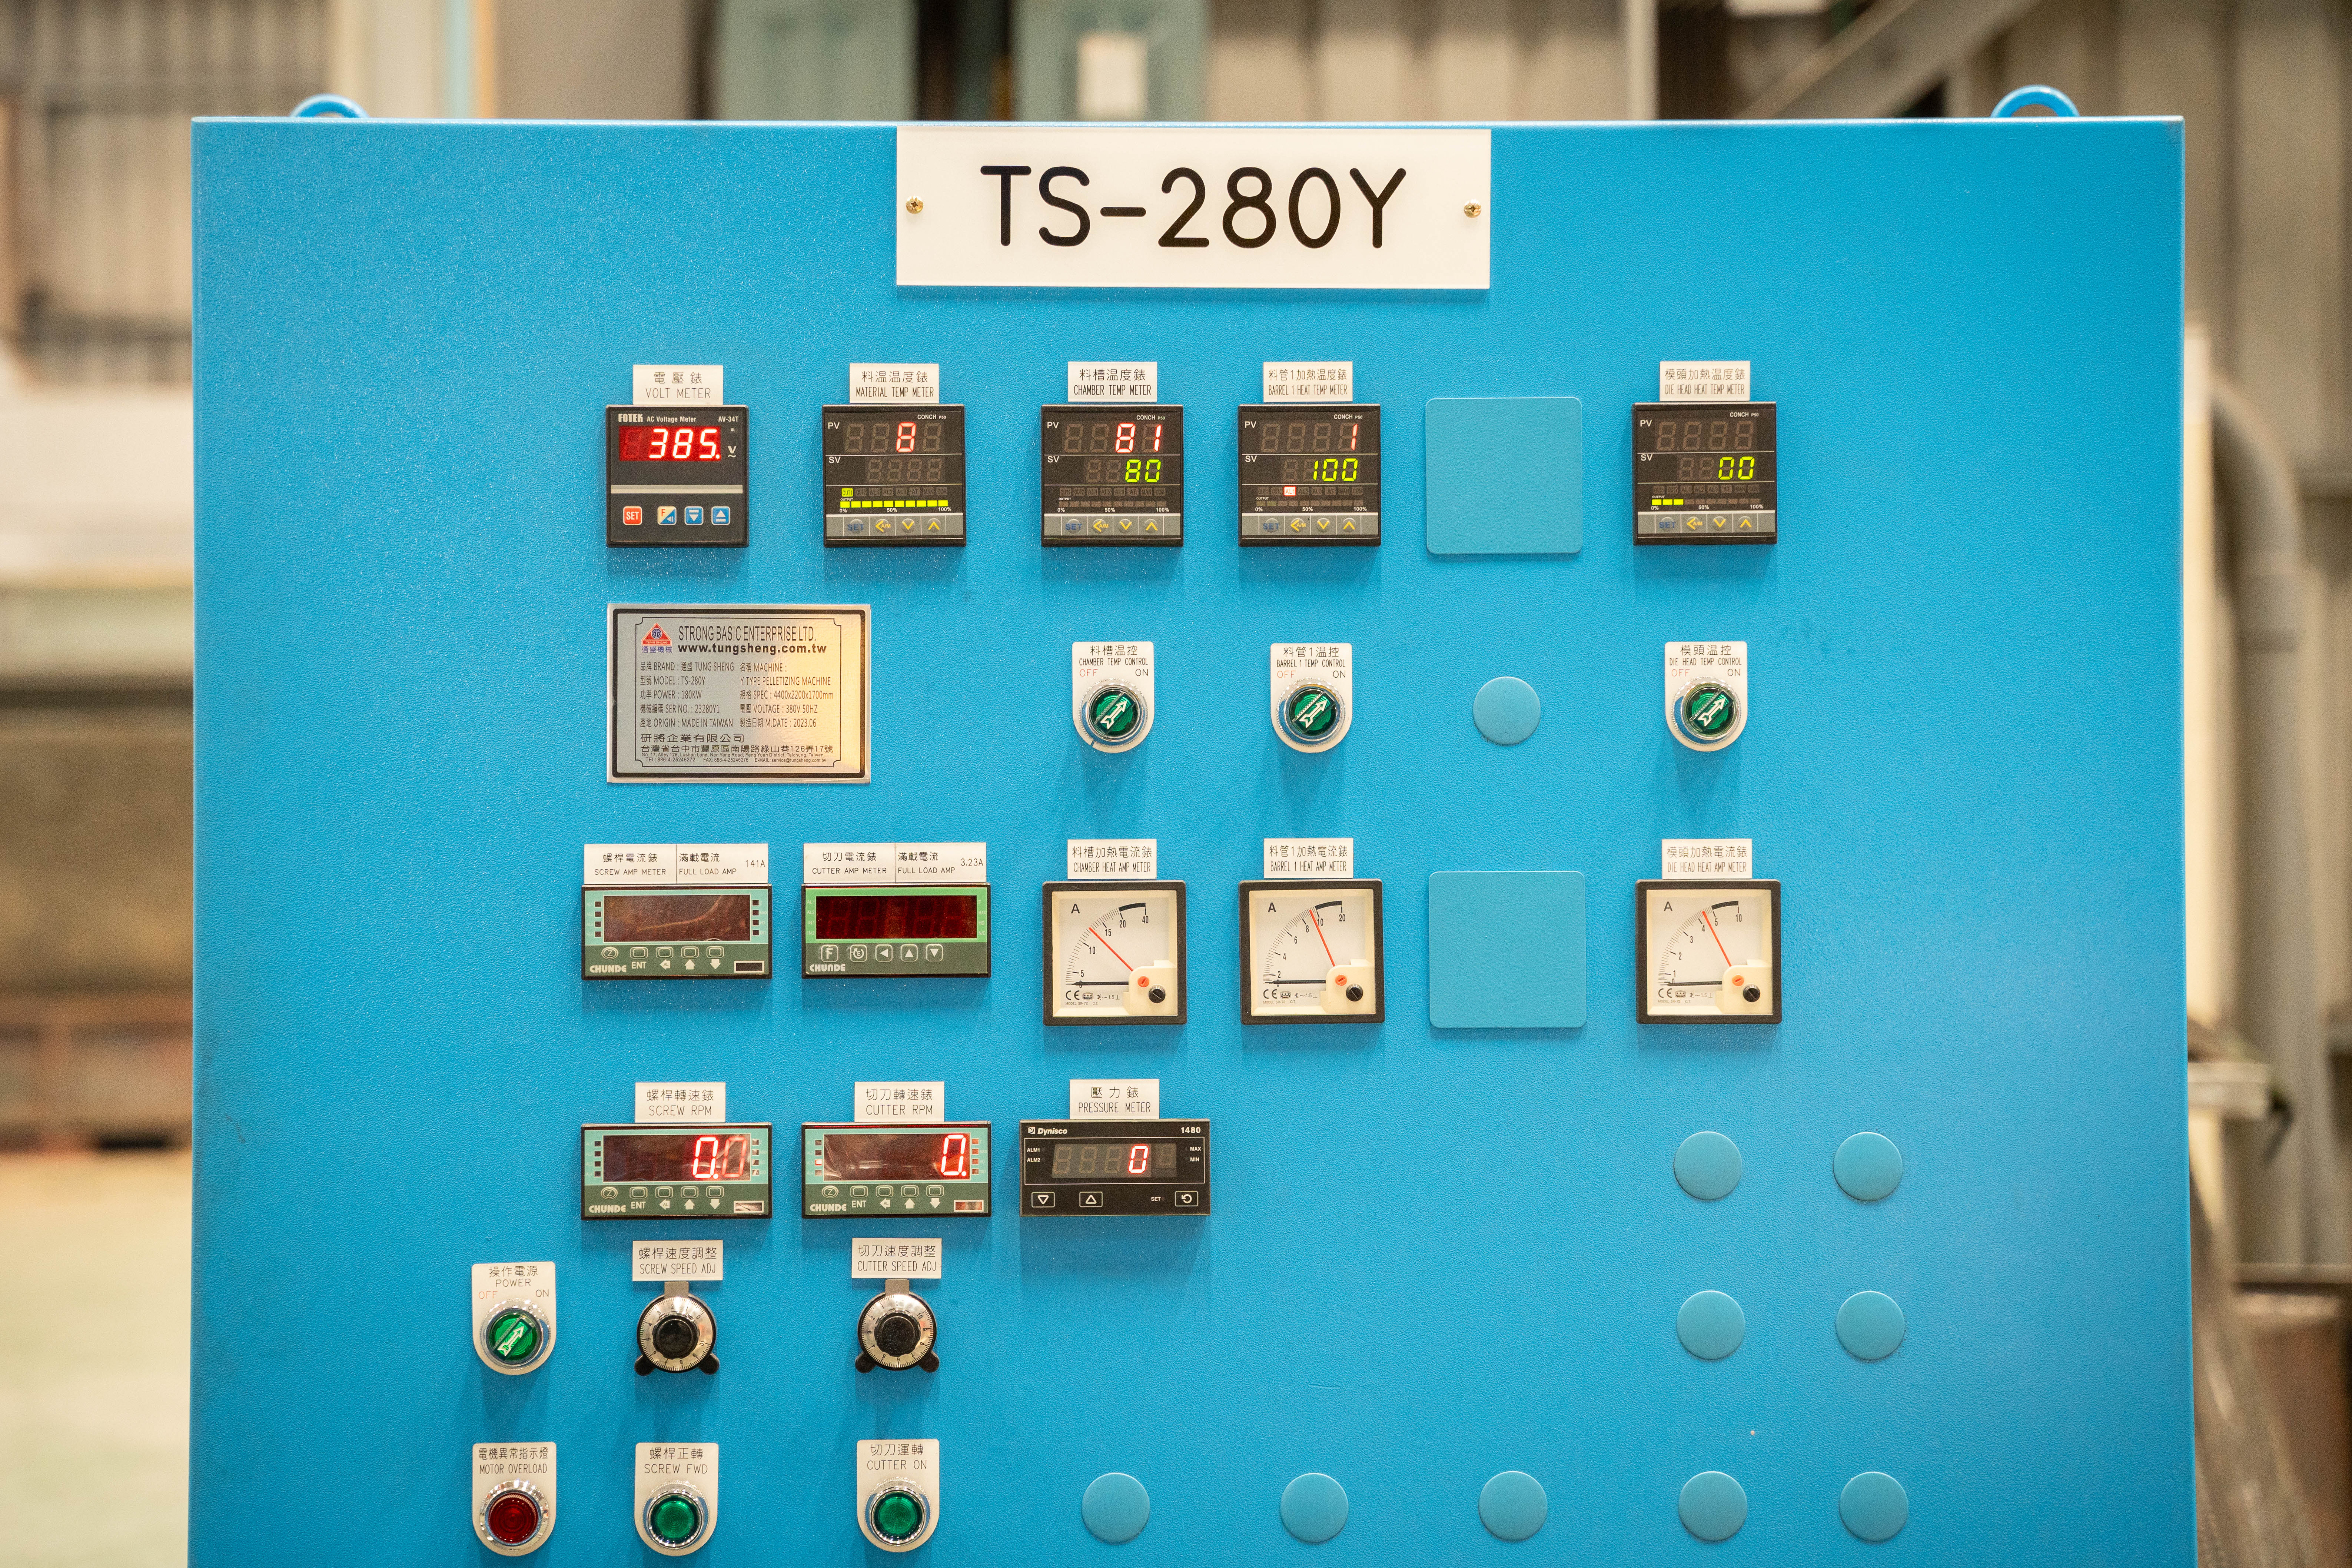 TS-280Y 電控箱